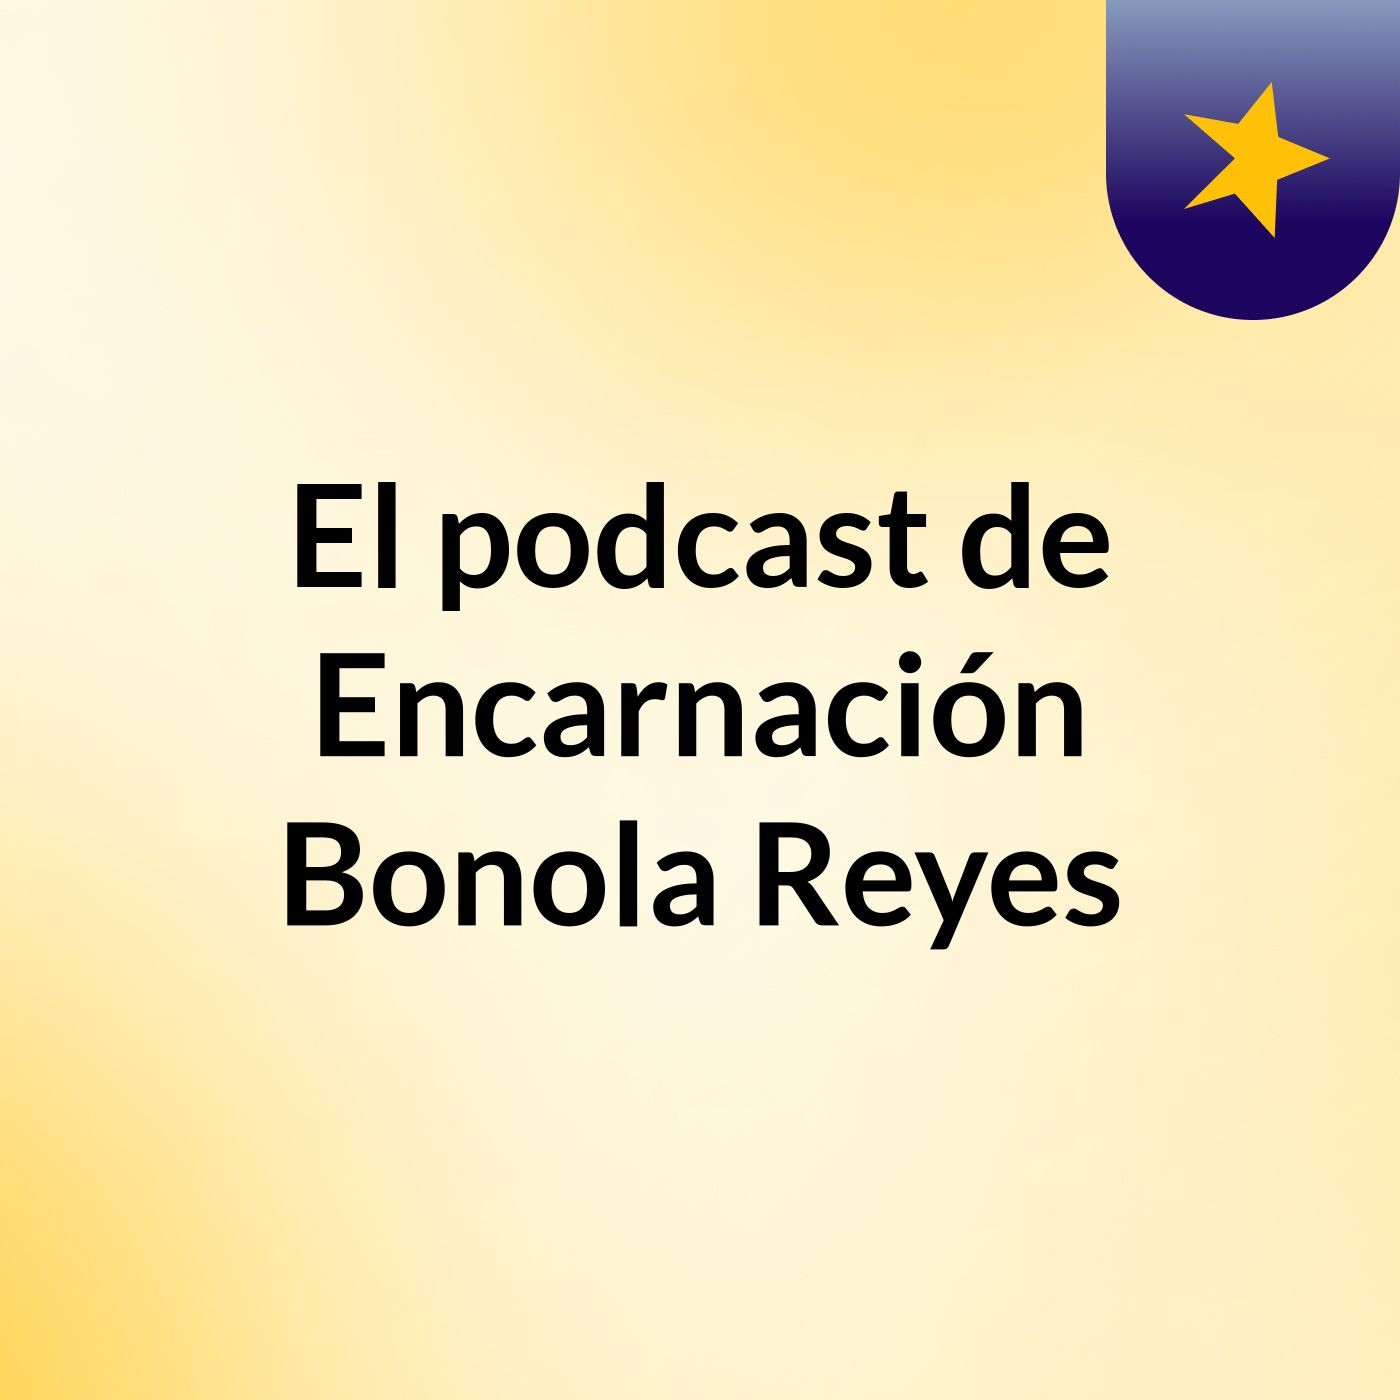 El podcast de Encarnación Bonola Reyes